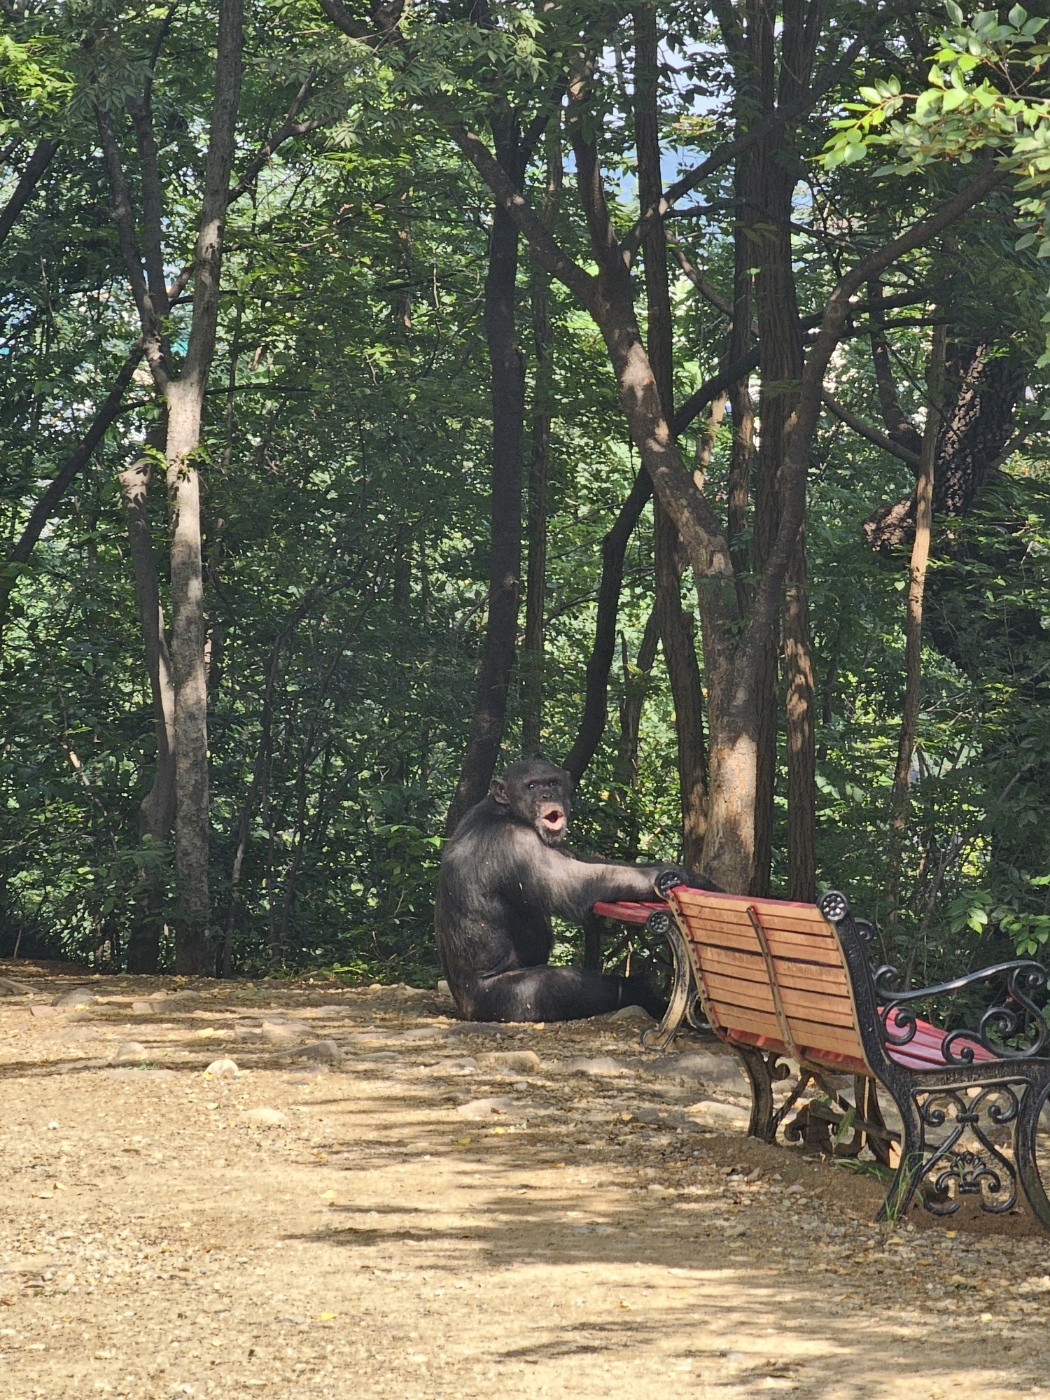 11일 오전 9시 11분께 달성공원에서 사육 중이던 침팬지 두 마리가 탈출했다. (대구소방안전본부 제공)